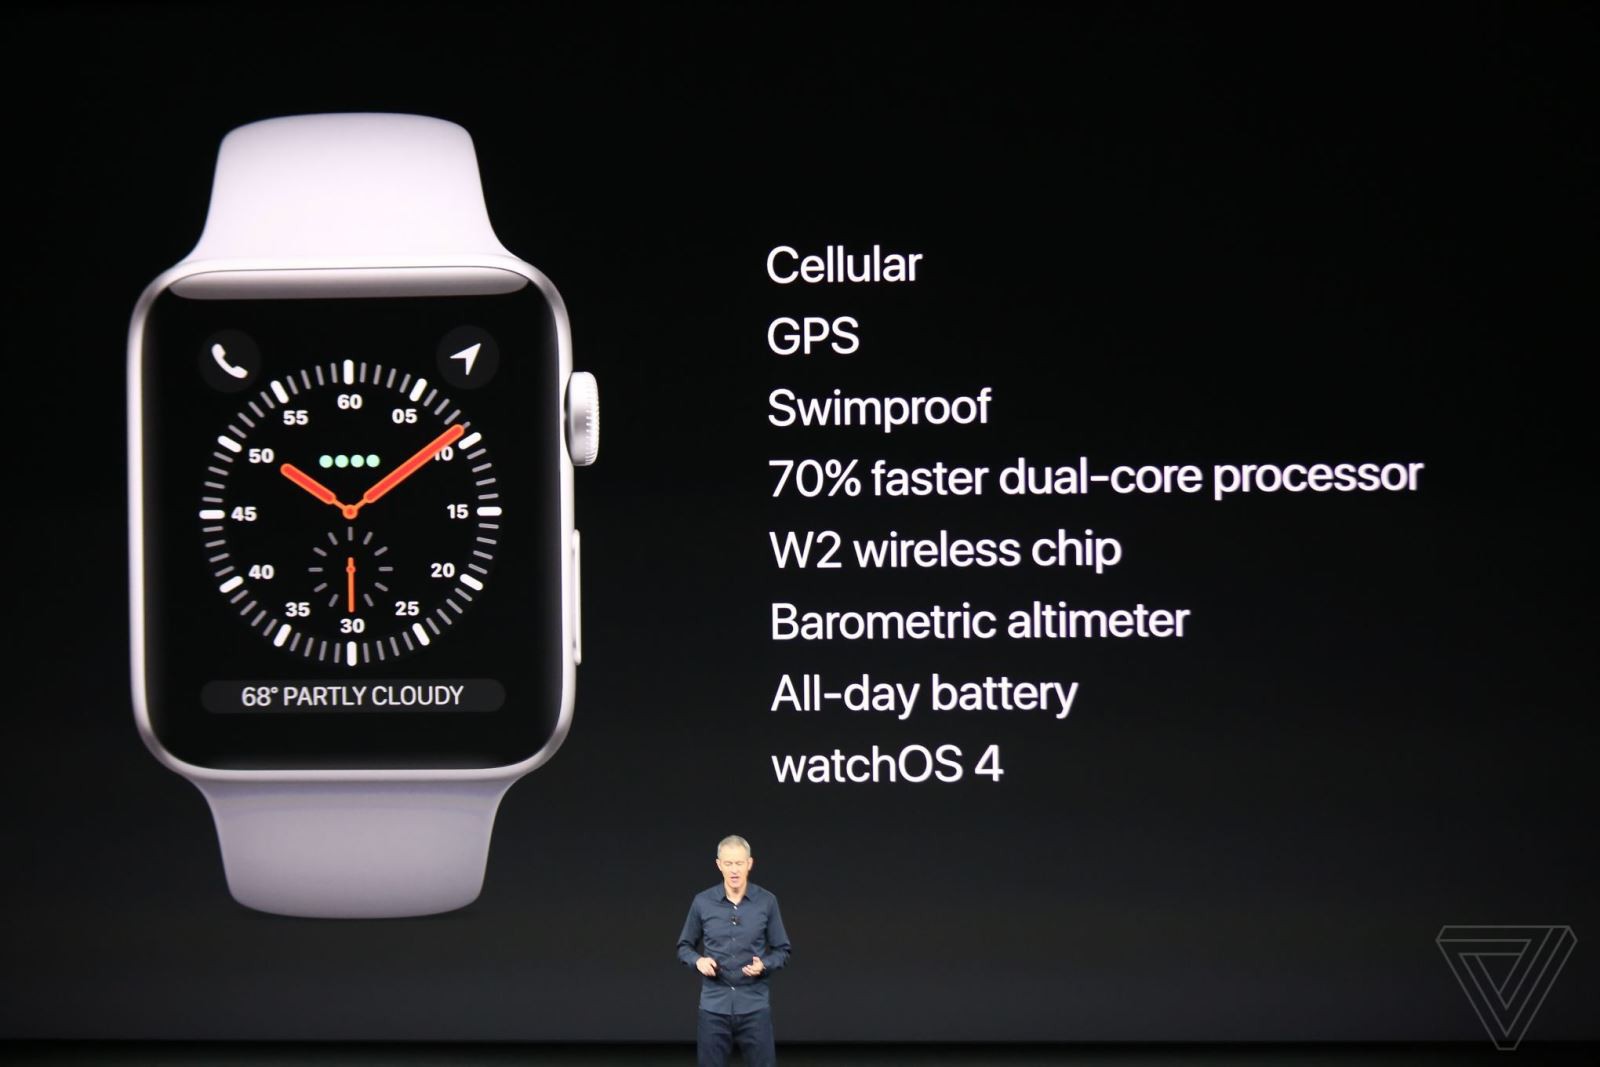  Tính năg Apple Watch Series 3 đã được nâng cấp một cách đáng kể so với các phiên bản tiền nhiệm: Đã có thể nghe gọi trên Apple Watch, Siri đã có thể ‘’nói’’, hỗ trợ tốt hơn trong việc tập luyên thể dục,…